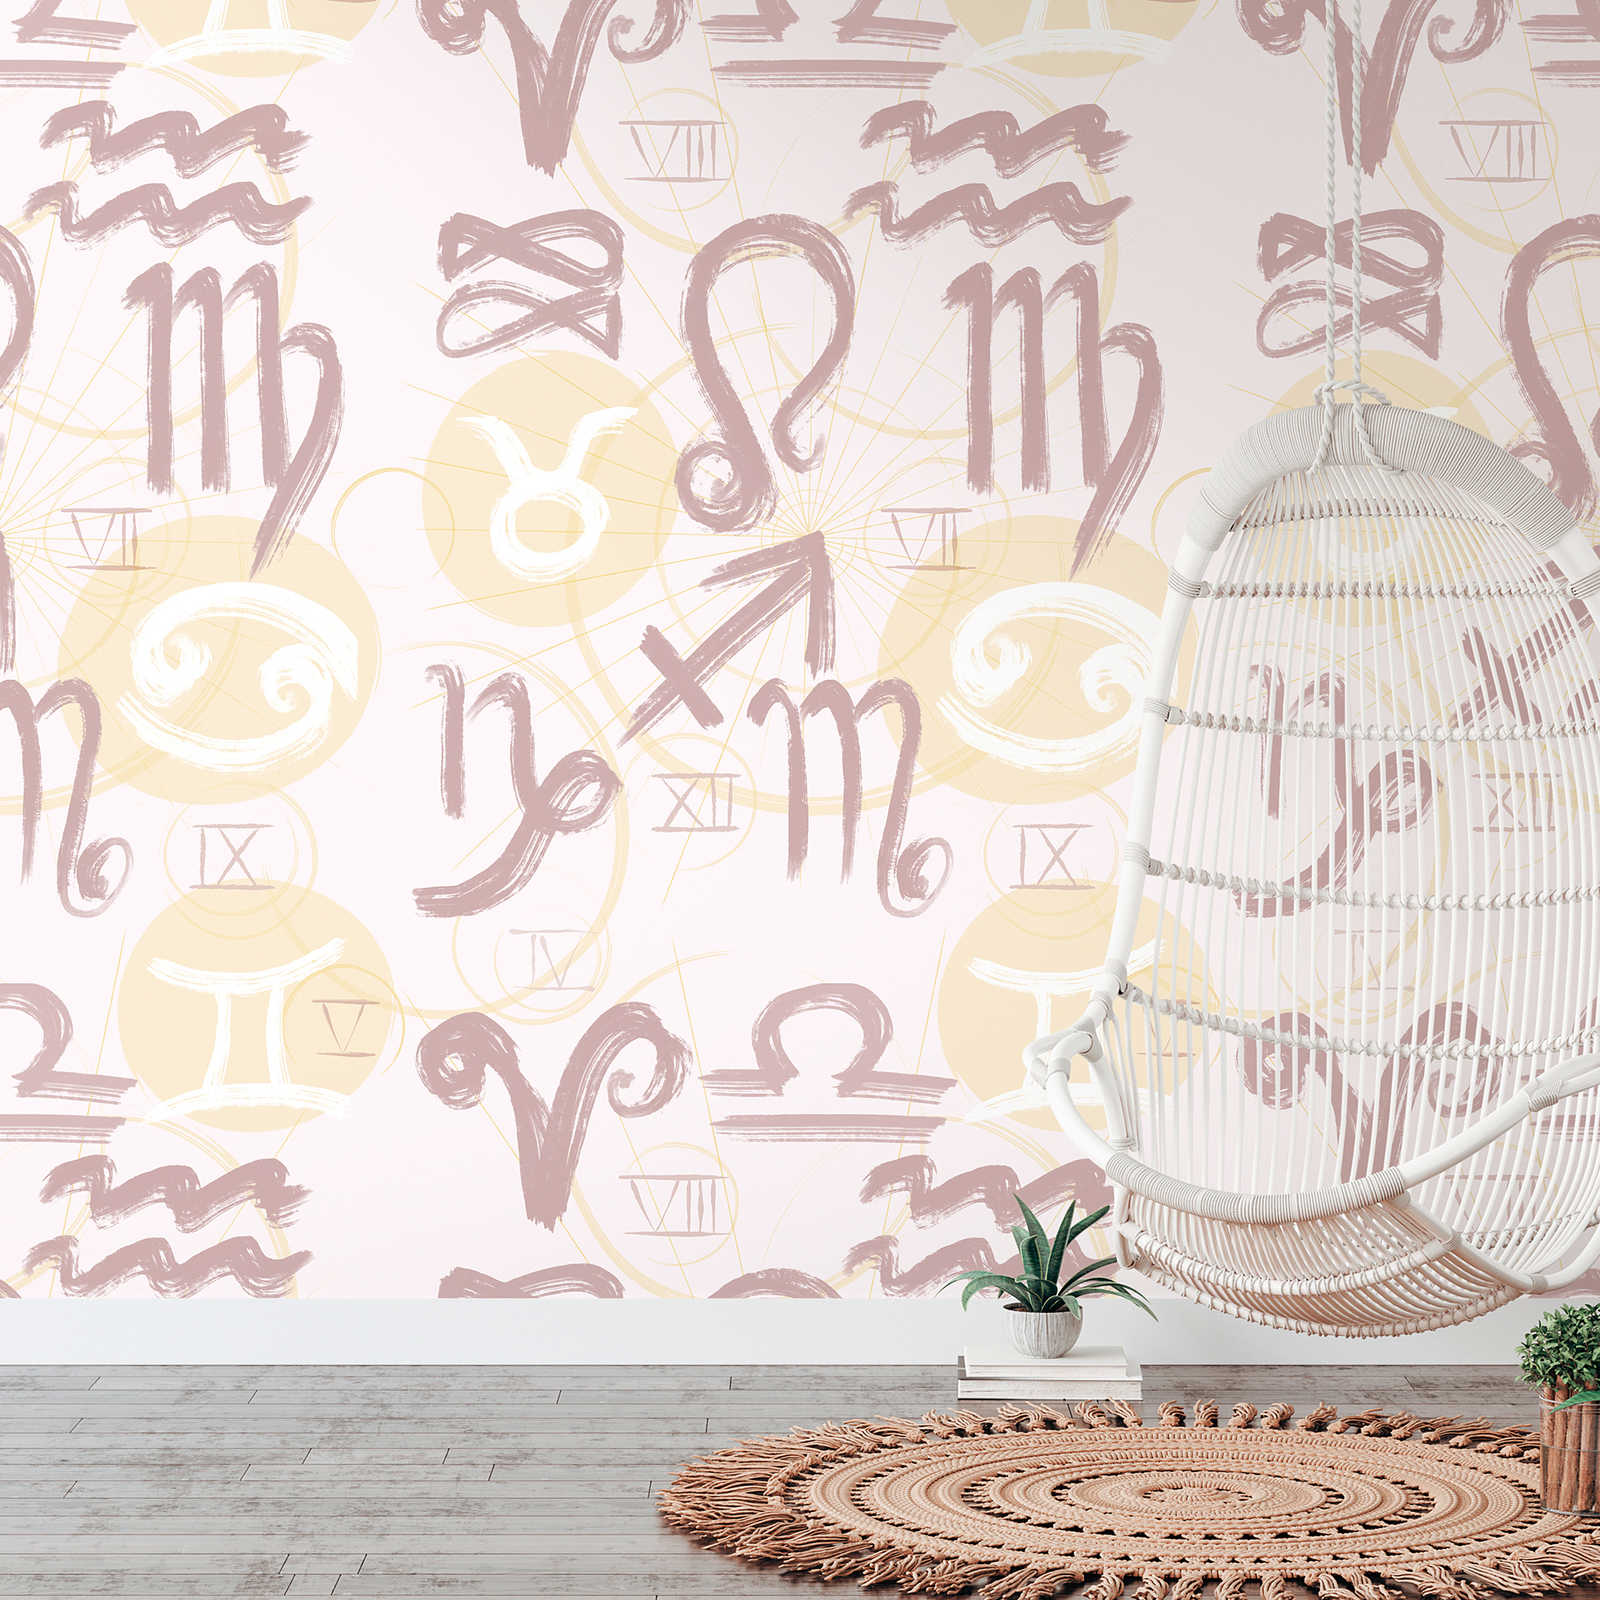 Papel pintado con símbolos del zodiaco y números romanos - crema, amarillo, rosa
